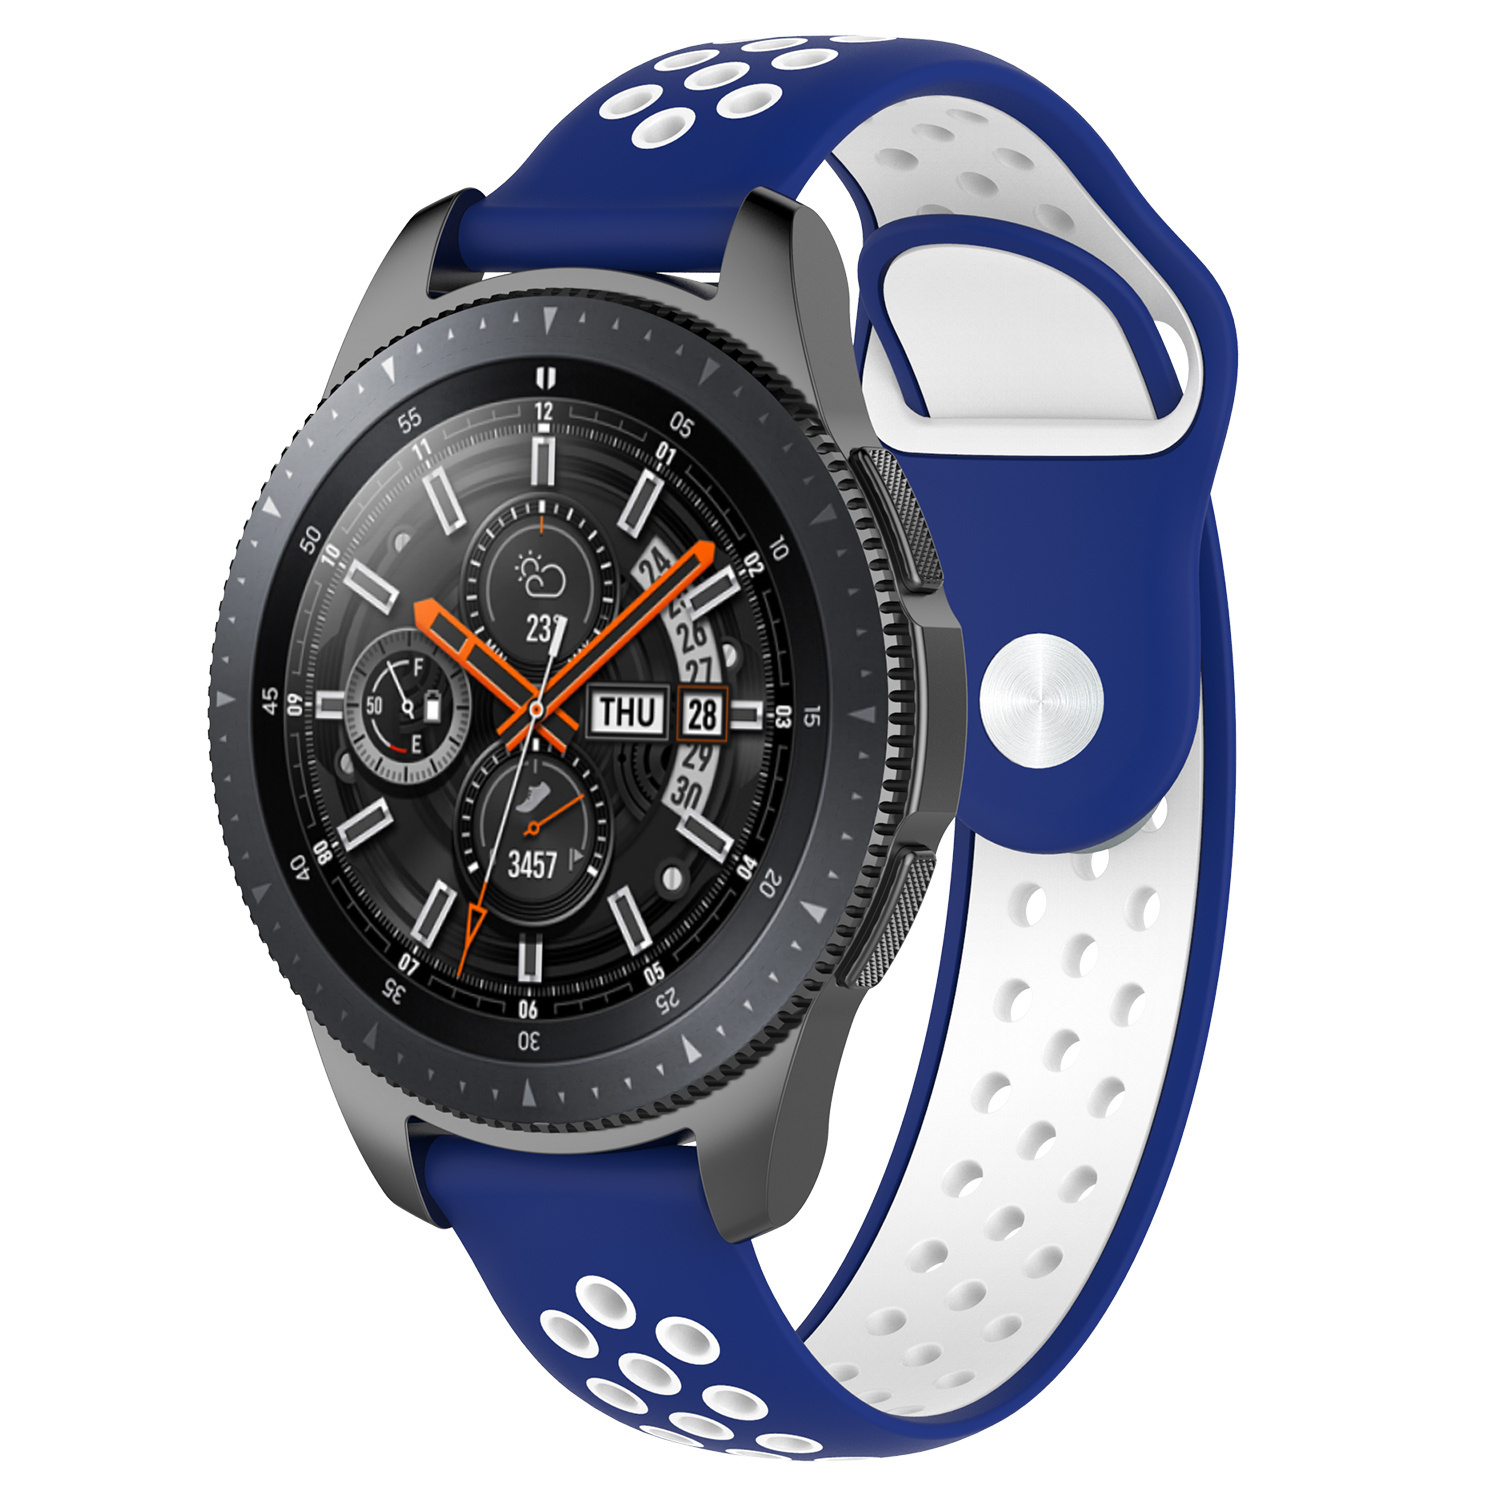 Correa deportiva doble para el Samsung Galaxy Watch - azul blanco